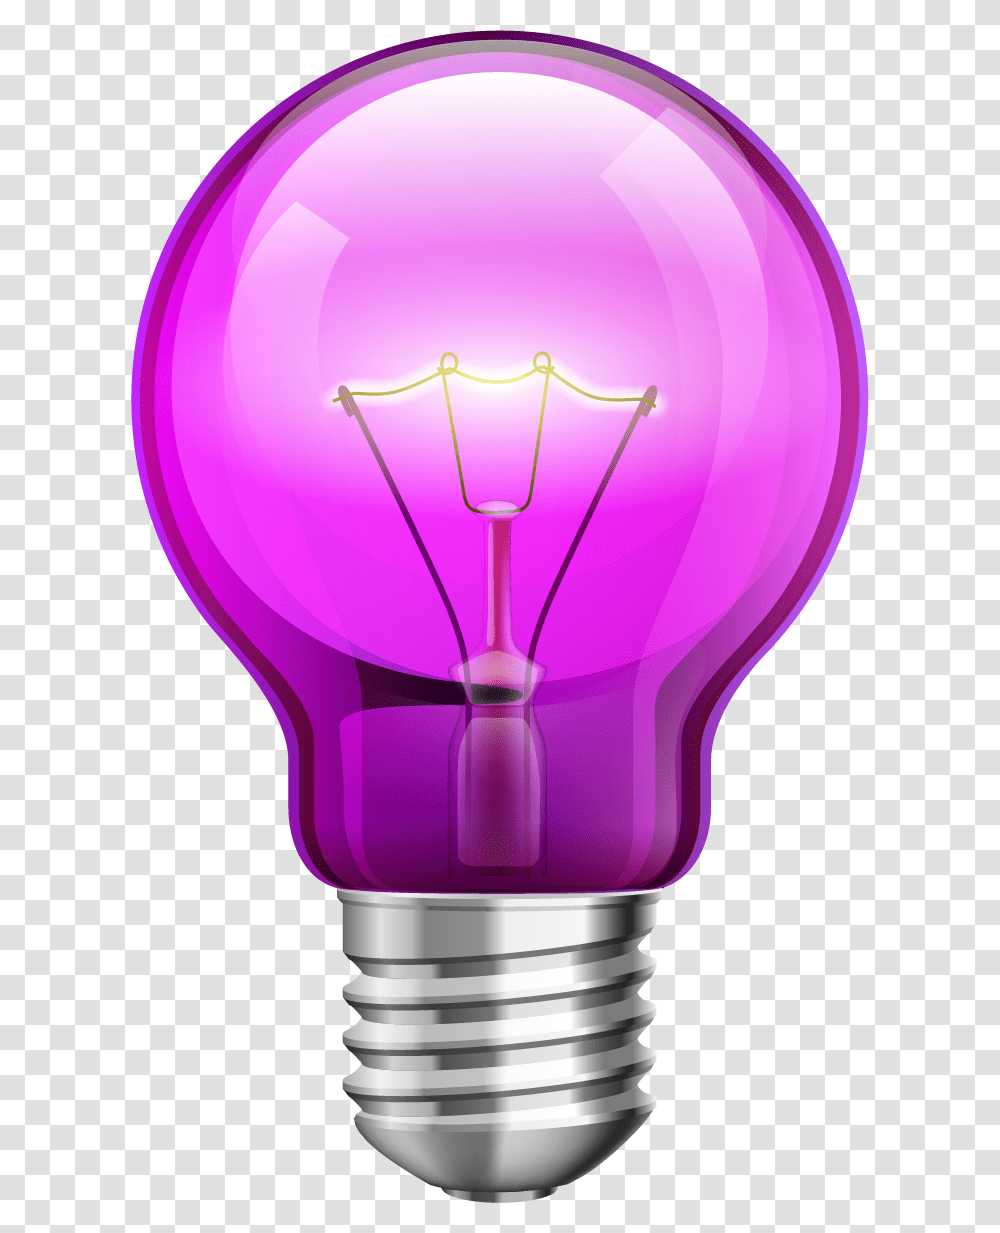 Electricity, Light, Lamp, Lightbulb, Mixer Transparent Png